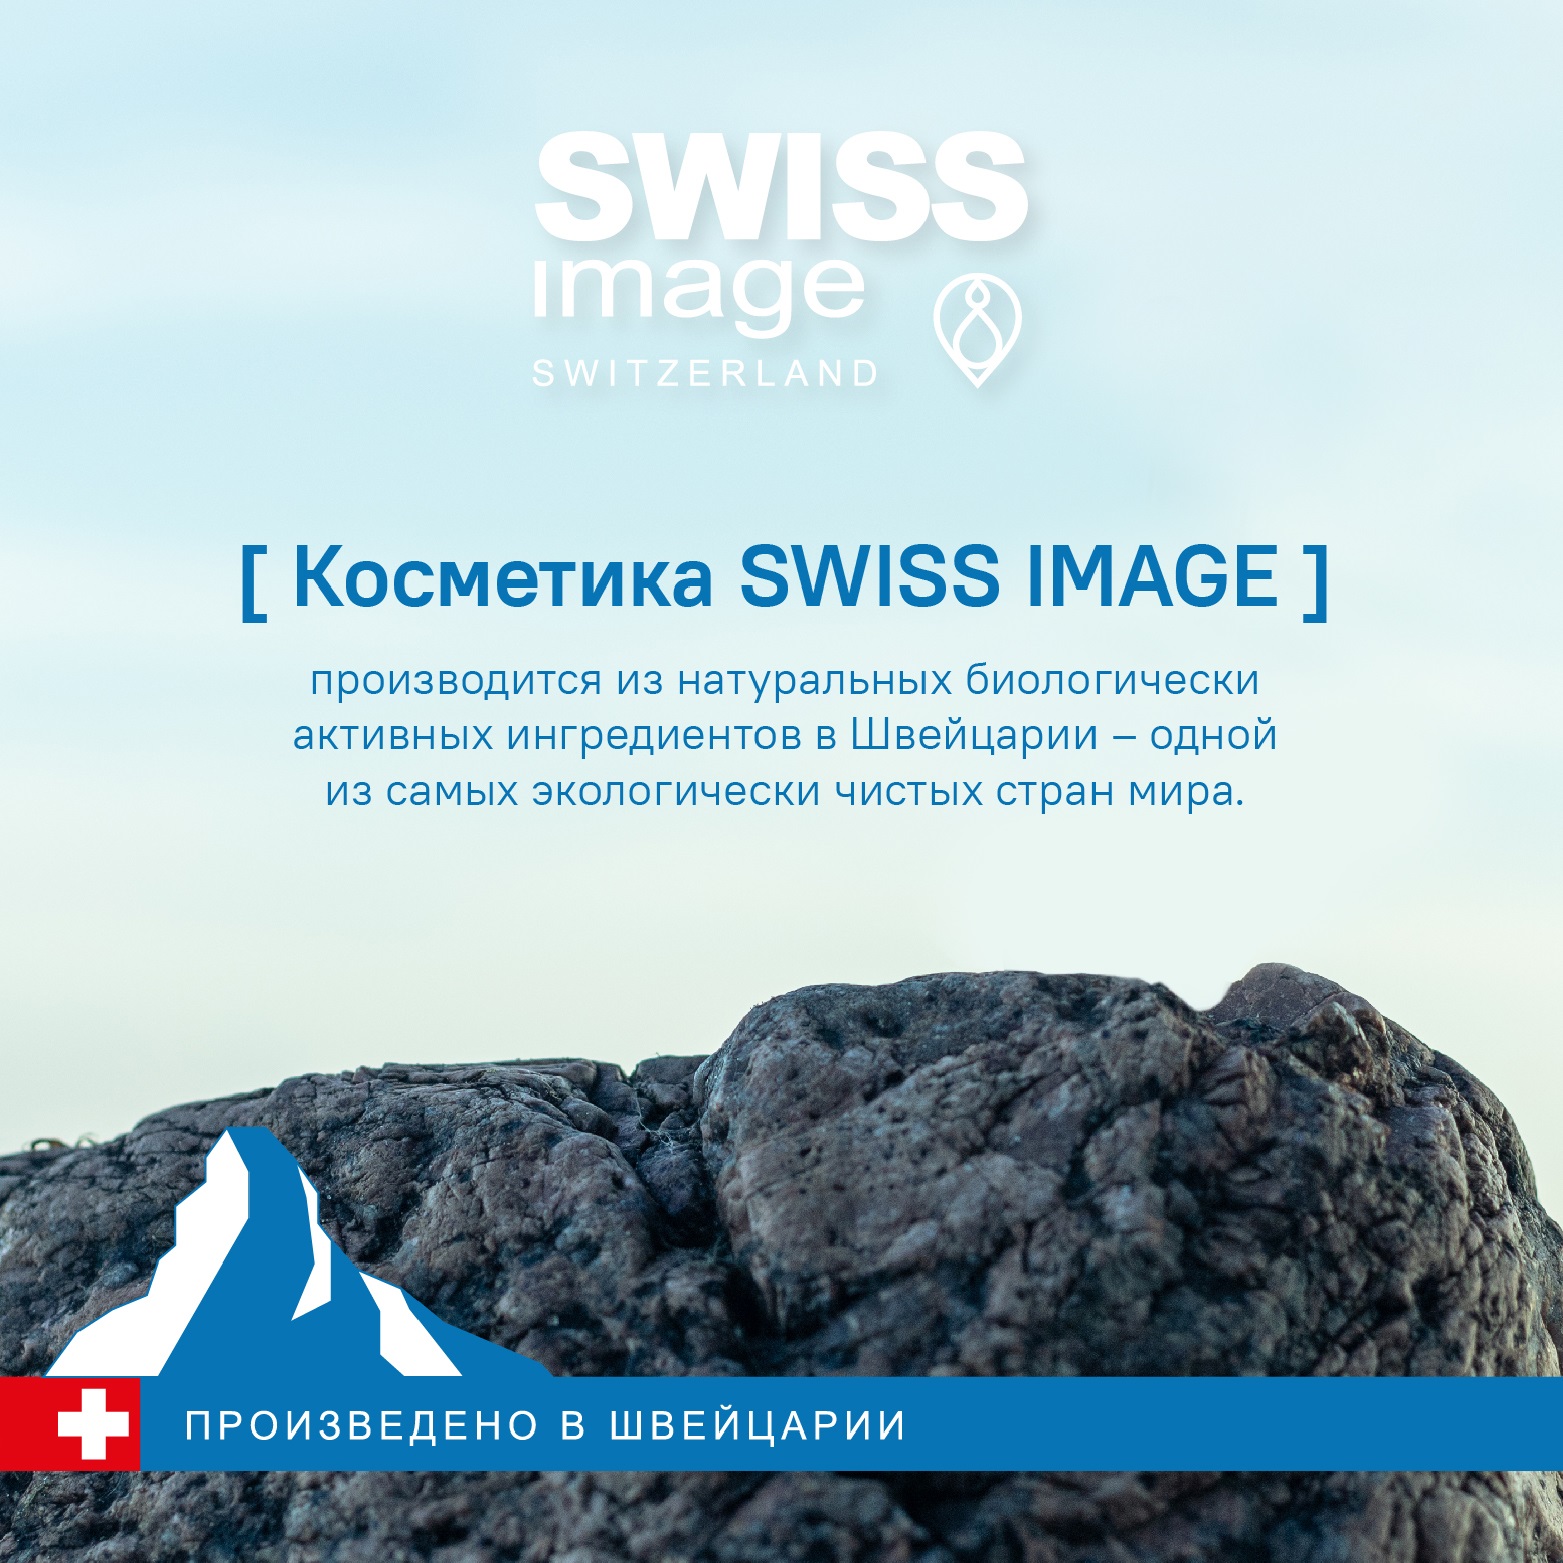 Крем вокруг глаз Swiss image против морщин 36+ антивозрастной уход 15 мл - фото 10